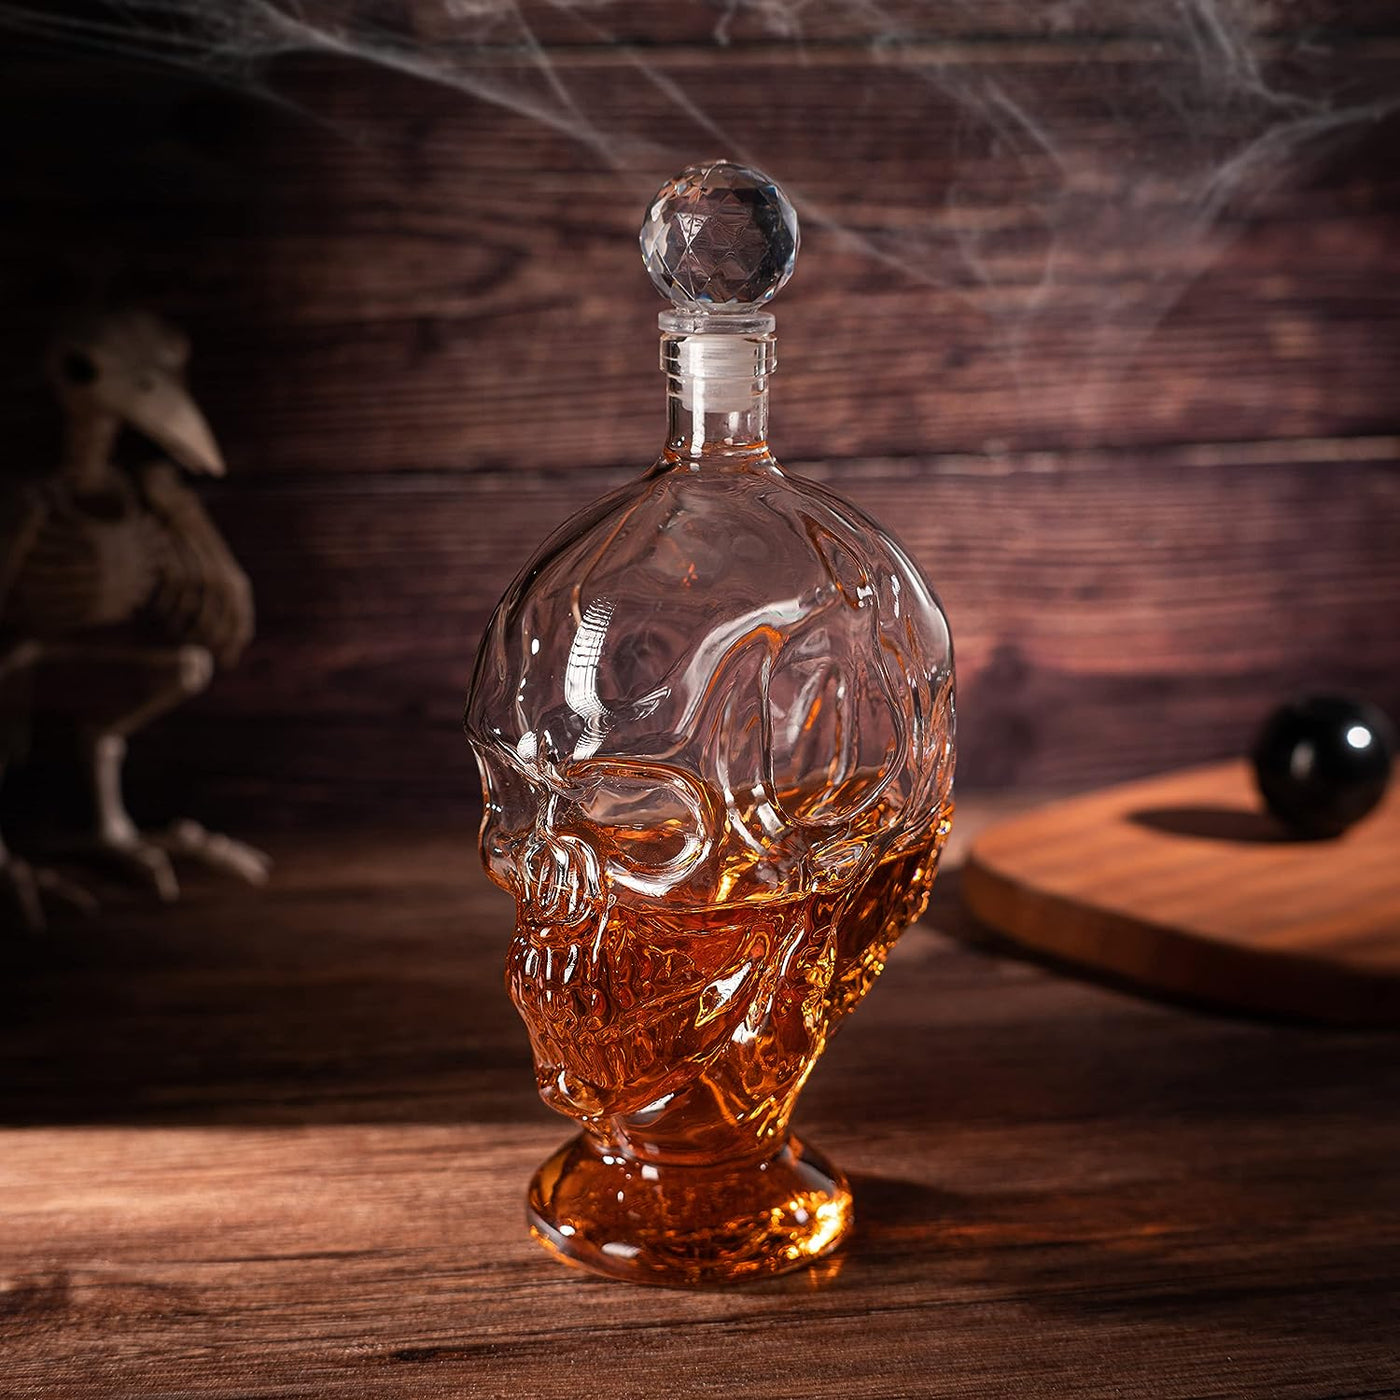 Skull Whiskey & Wine Decanter, 2 Faced Skull & Claw Decanter, Decor, Liquor Decanter Bottle - by Liquor Lux 1000ml, Skeleton Bottle - Great Gift for Any Bar